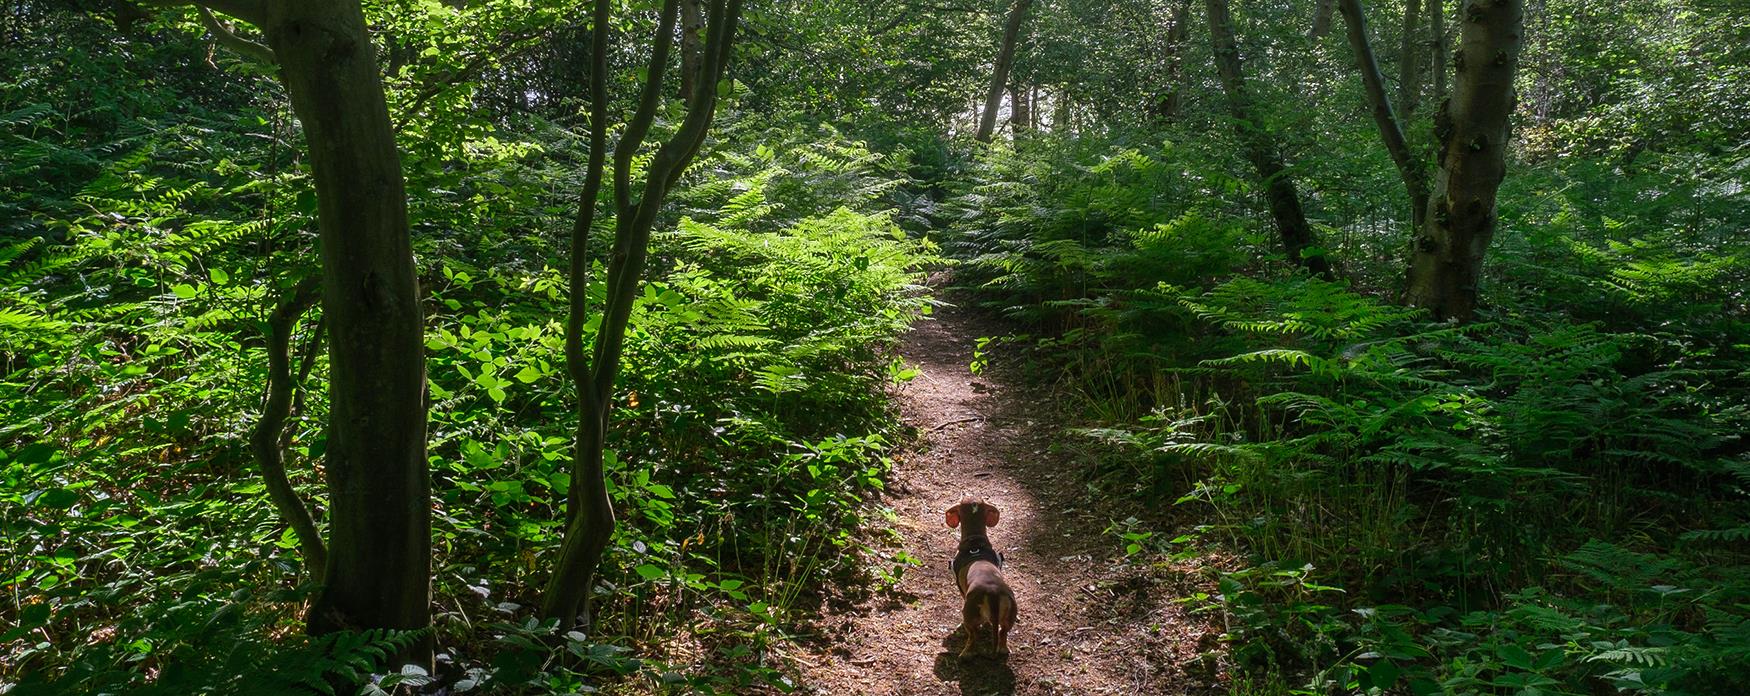 Dachshund walking in woodland